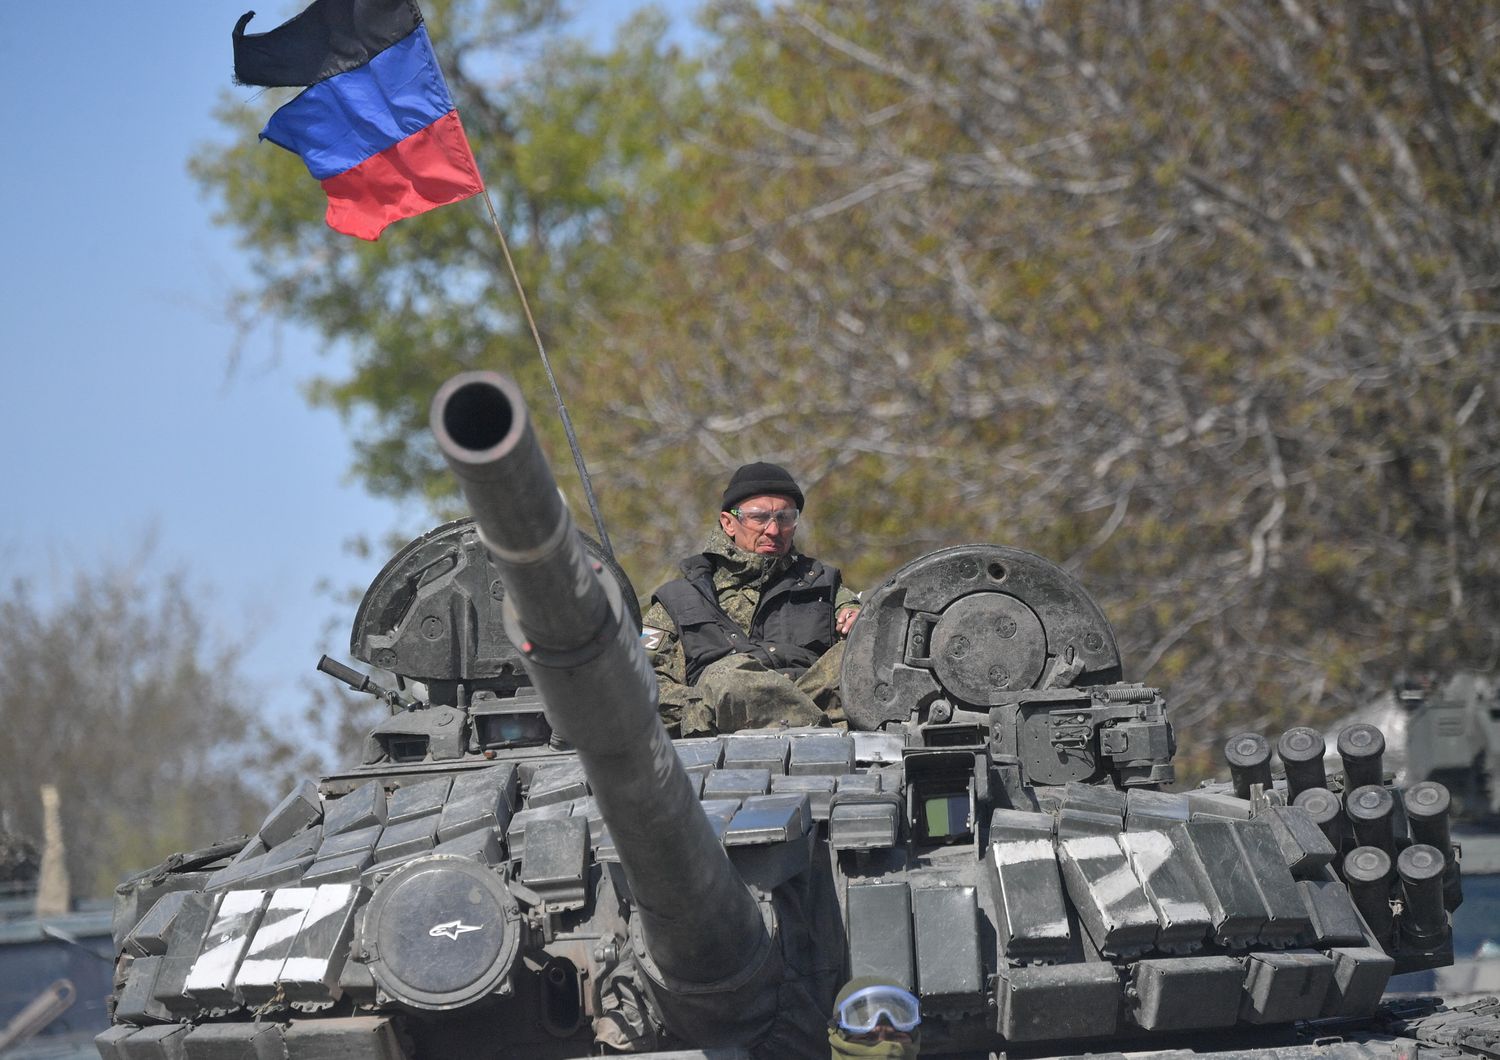 Carro armato russo nel Donetsk&nbsp;